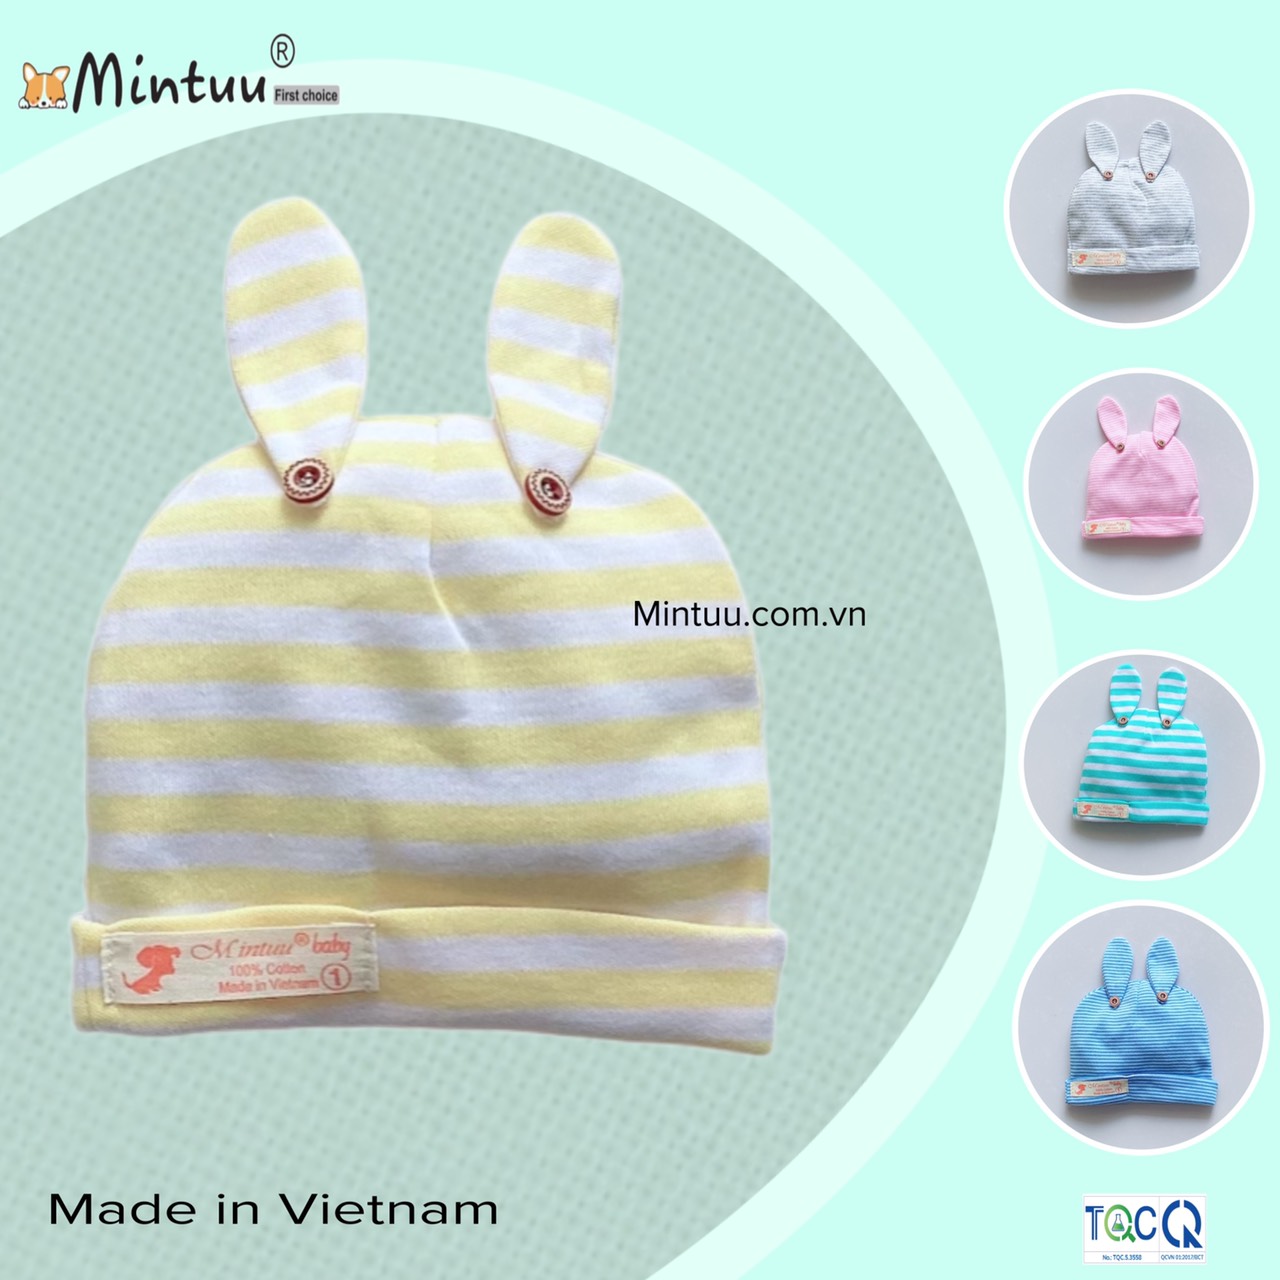 FREESHIP MAX - Mũ cho trẻ sơ sinh tai thỏ đính nút sọc màu, thương hiệu MINTUU - Thời trang và đồ dùng cho trẻ em - Hana’s kids